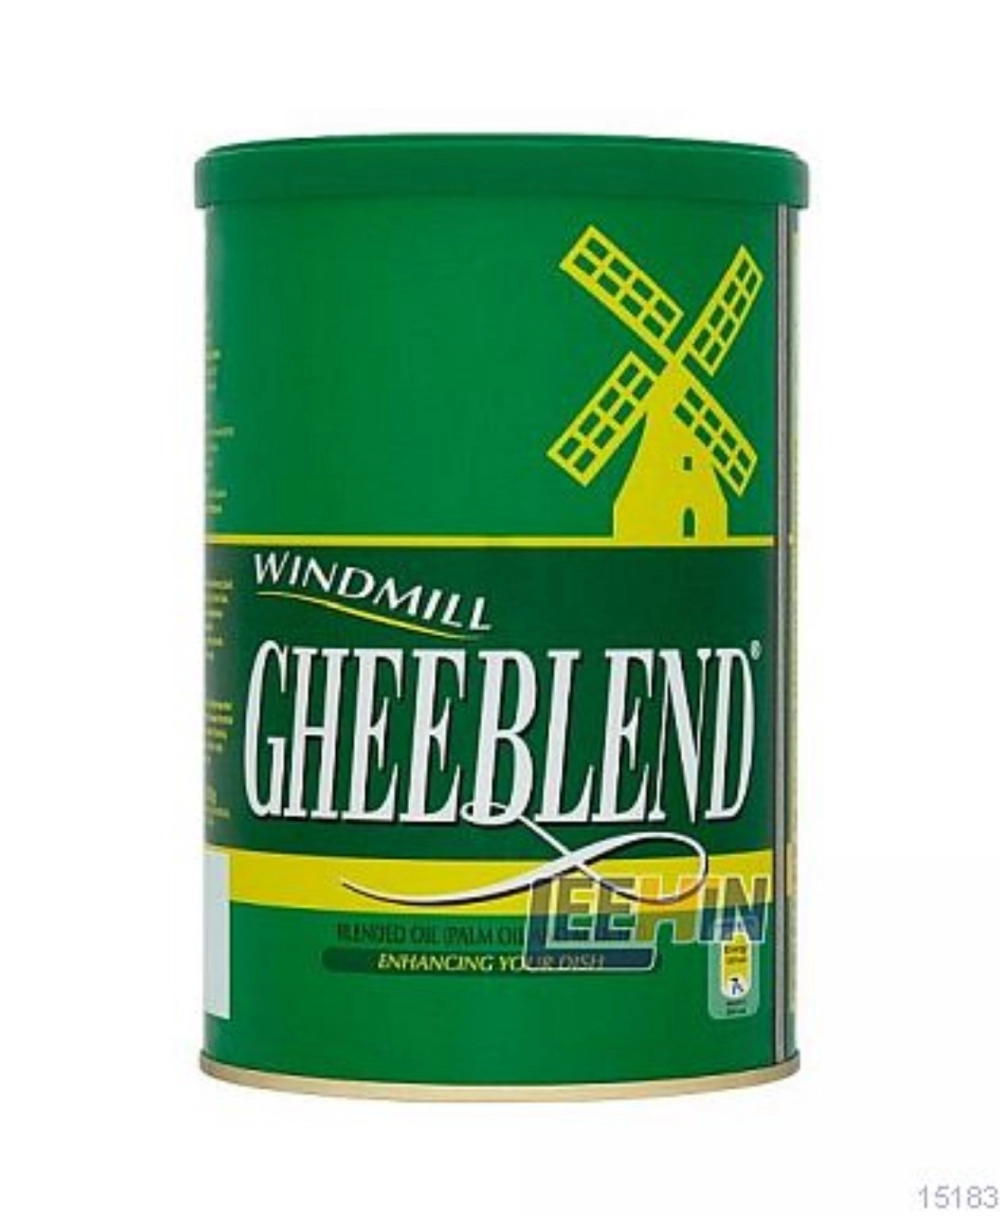 Windmill Gheeblend 800gm  [15182 15183]